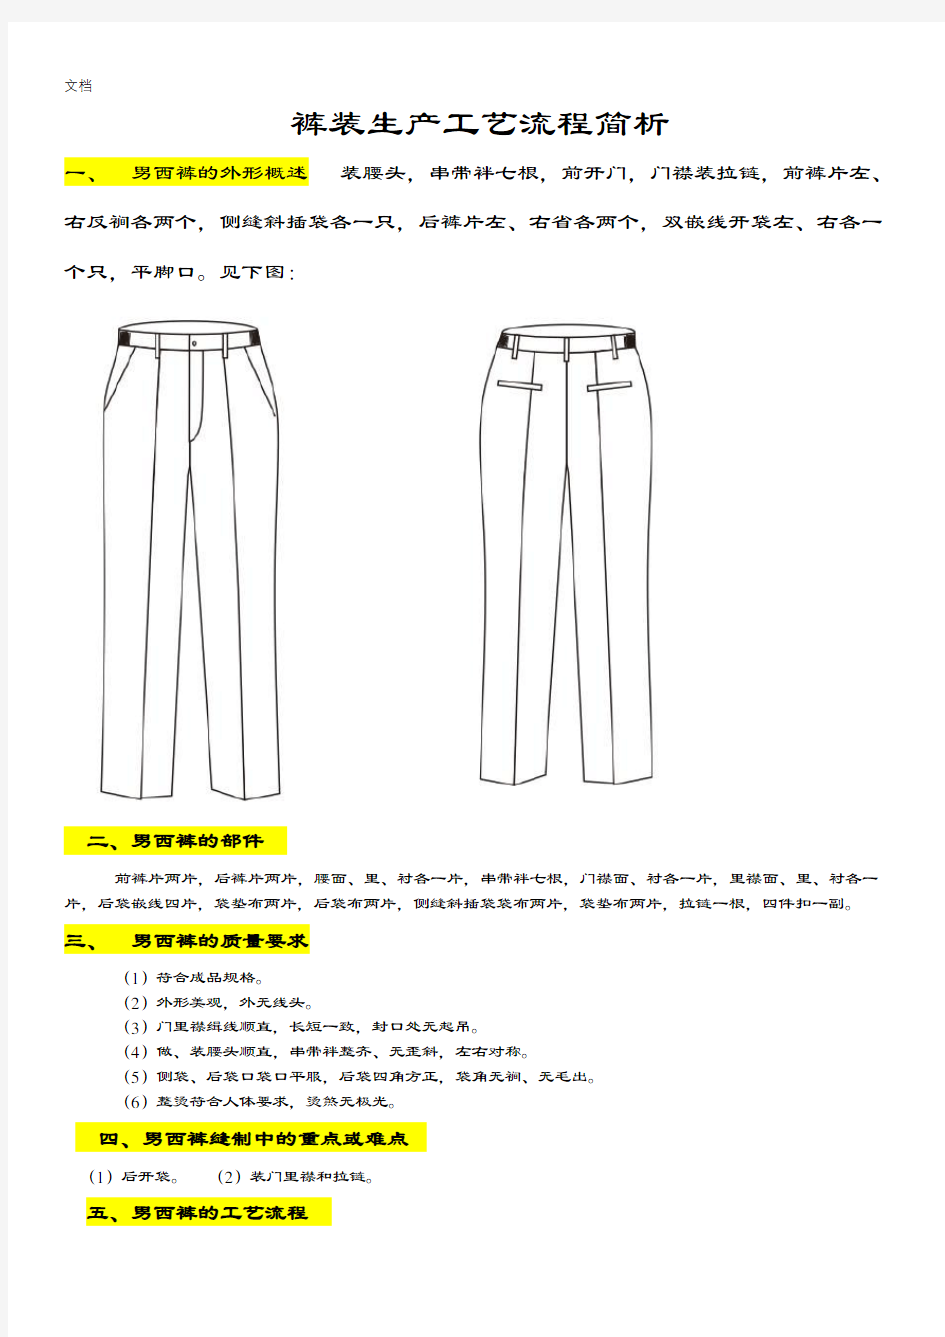 西裤实用工艺流程简析